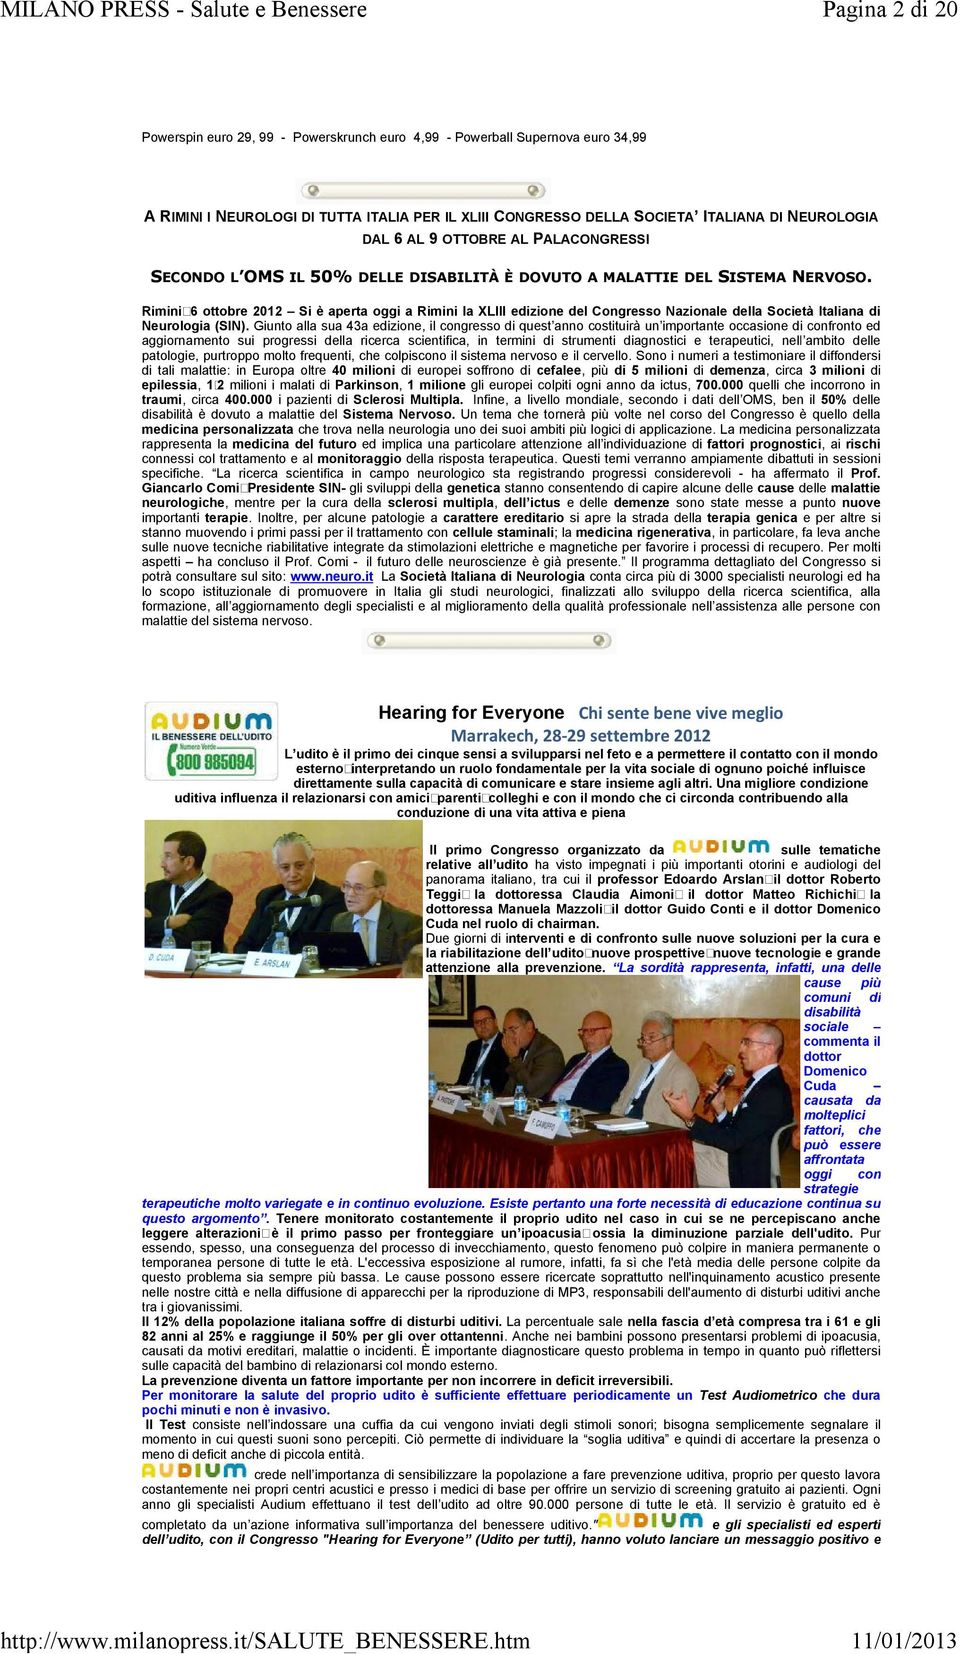 Rimini,6 ottobre 2012 Si è aperta oggi a Rimini la XLIII edizione del Congresso Nazionale della Società Italiana di Neurologia (SIN).